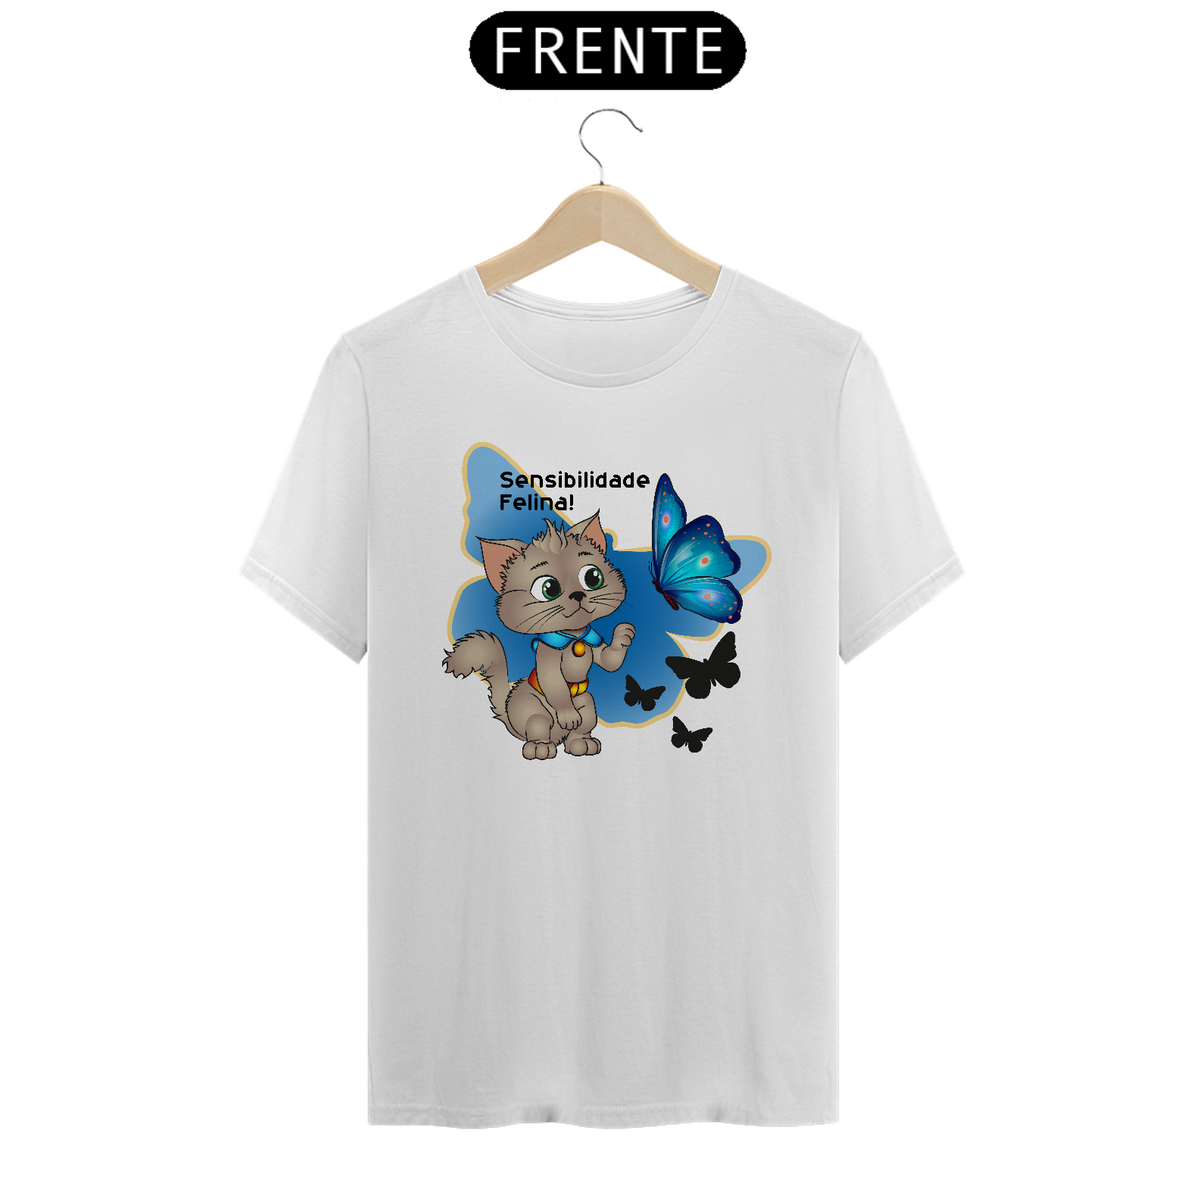 Nome do produto: T-Shirt Classic - Sensibilidade Felina!